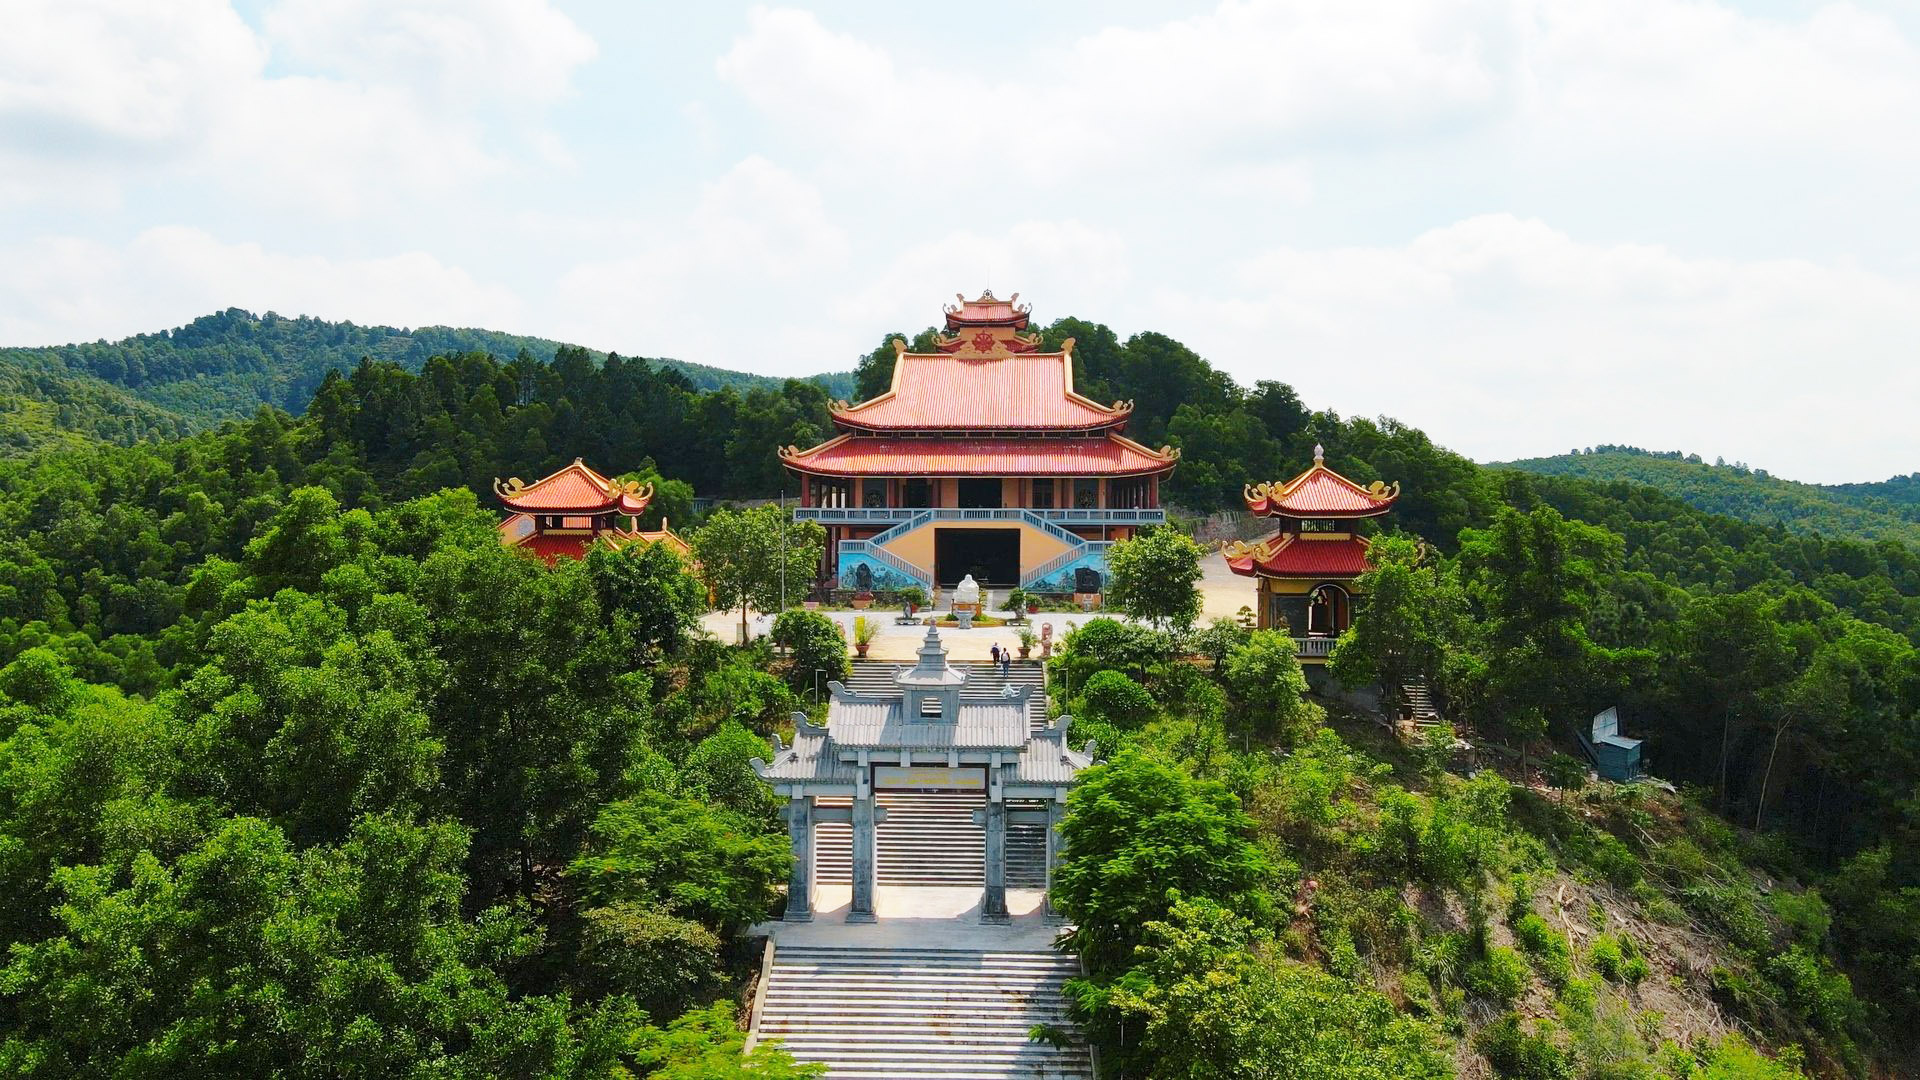 Thiền viện Trúc lâm Phượng hoàng – Bắc Giang